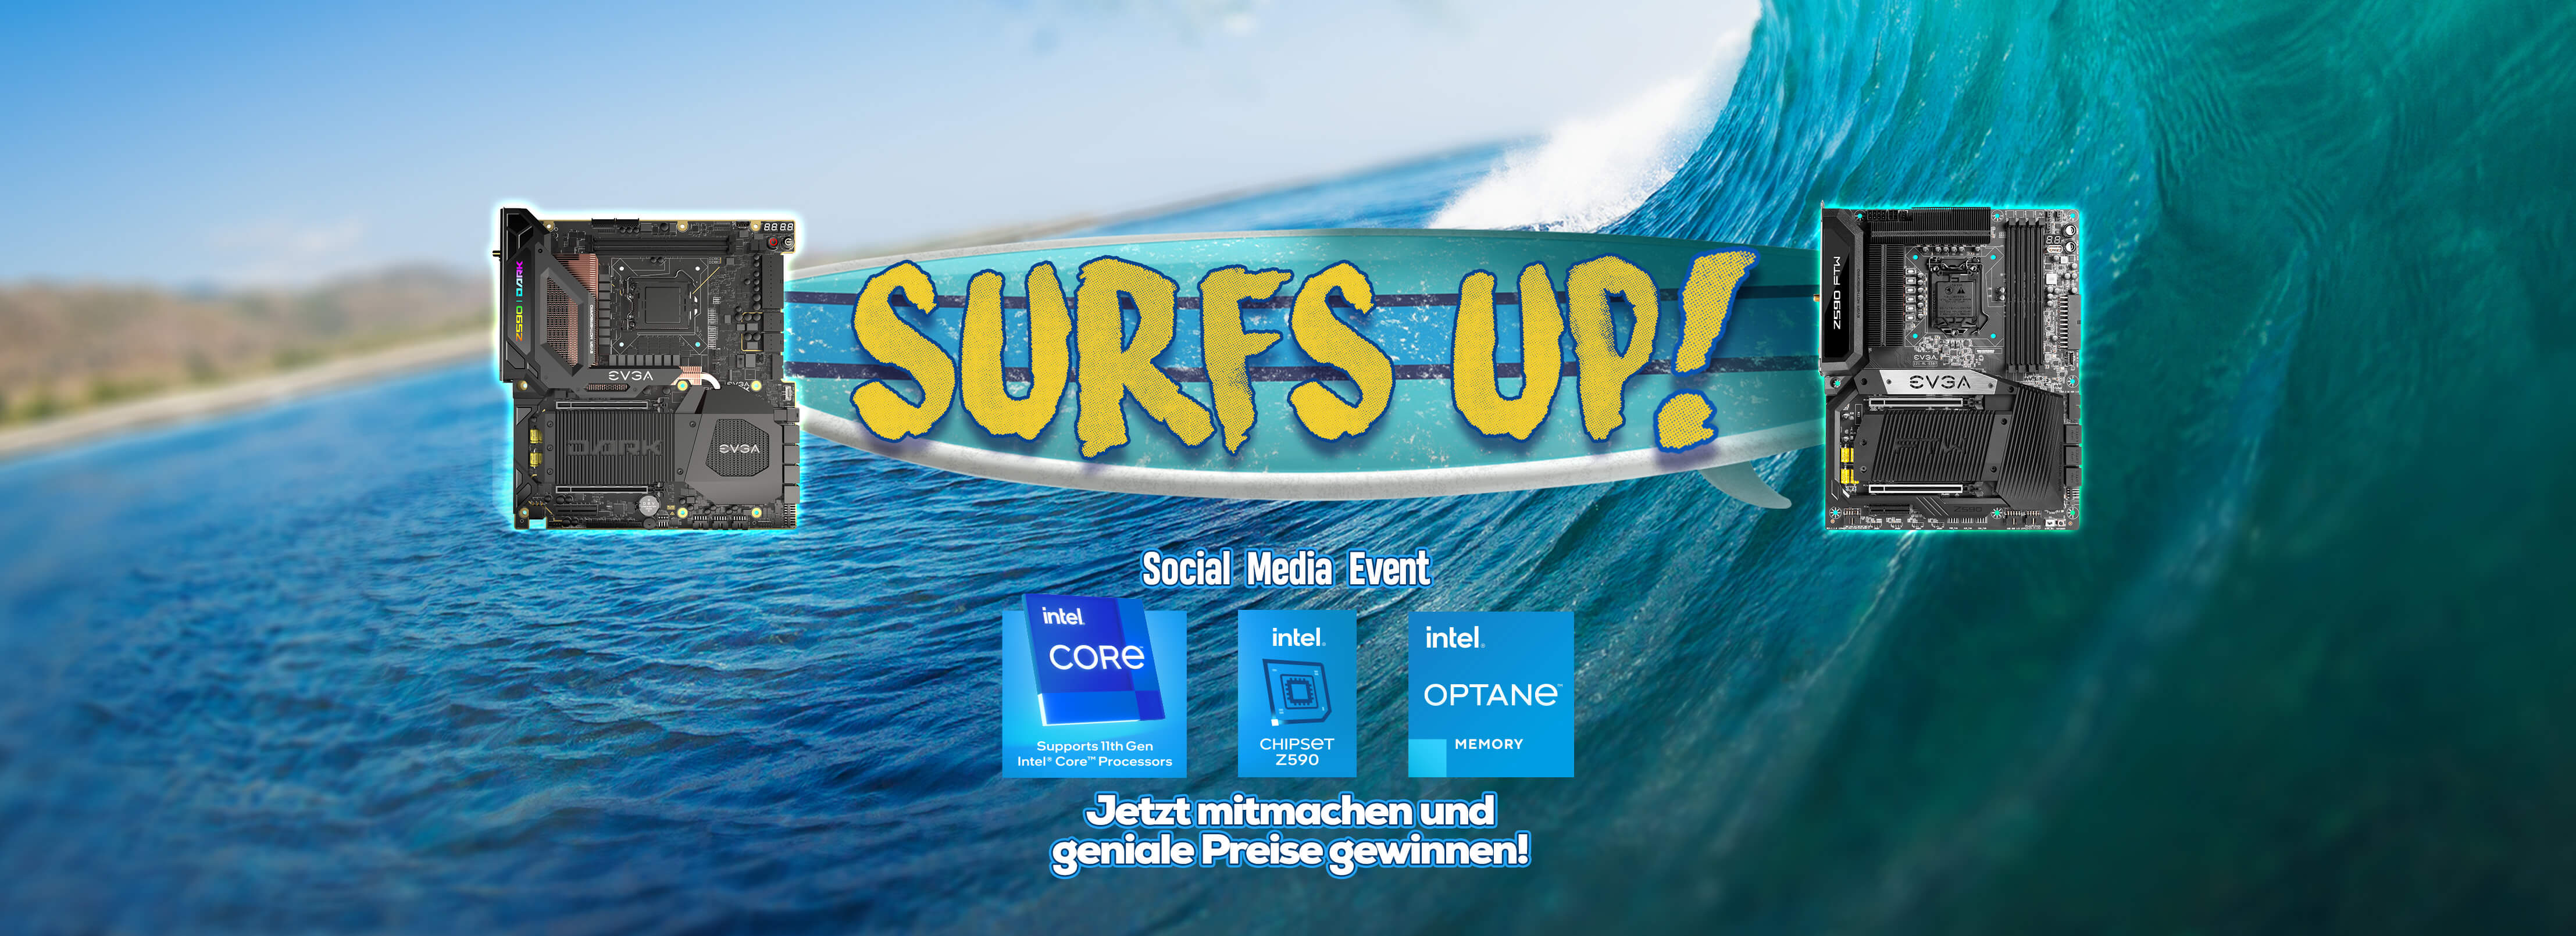 Surfs Up Social Media Event